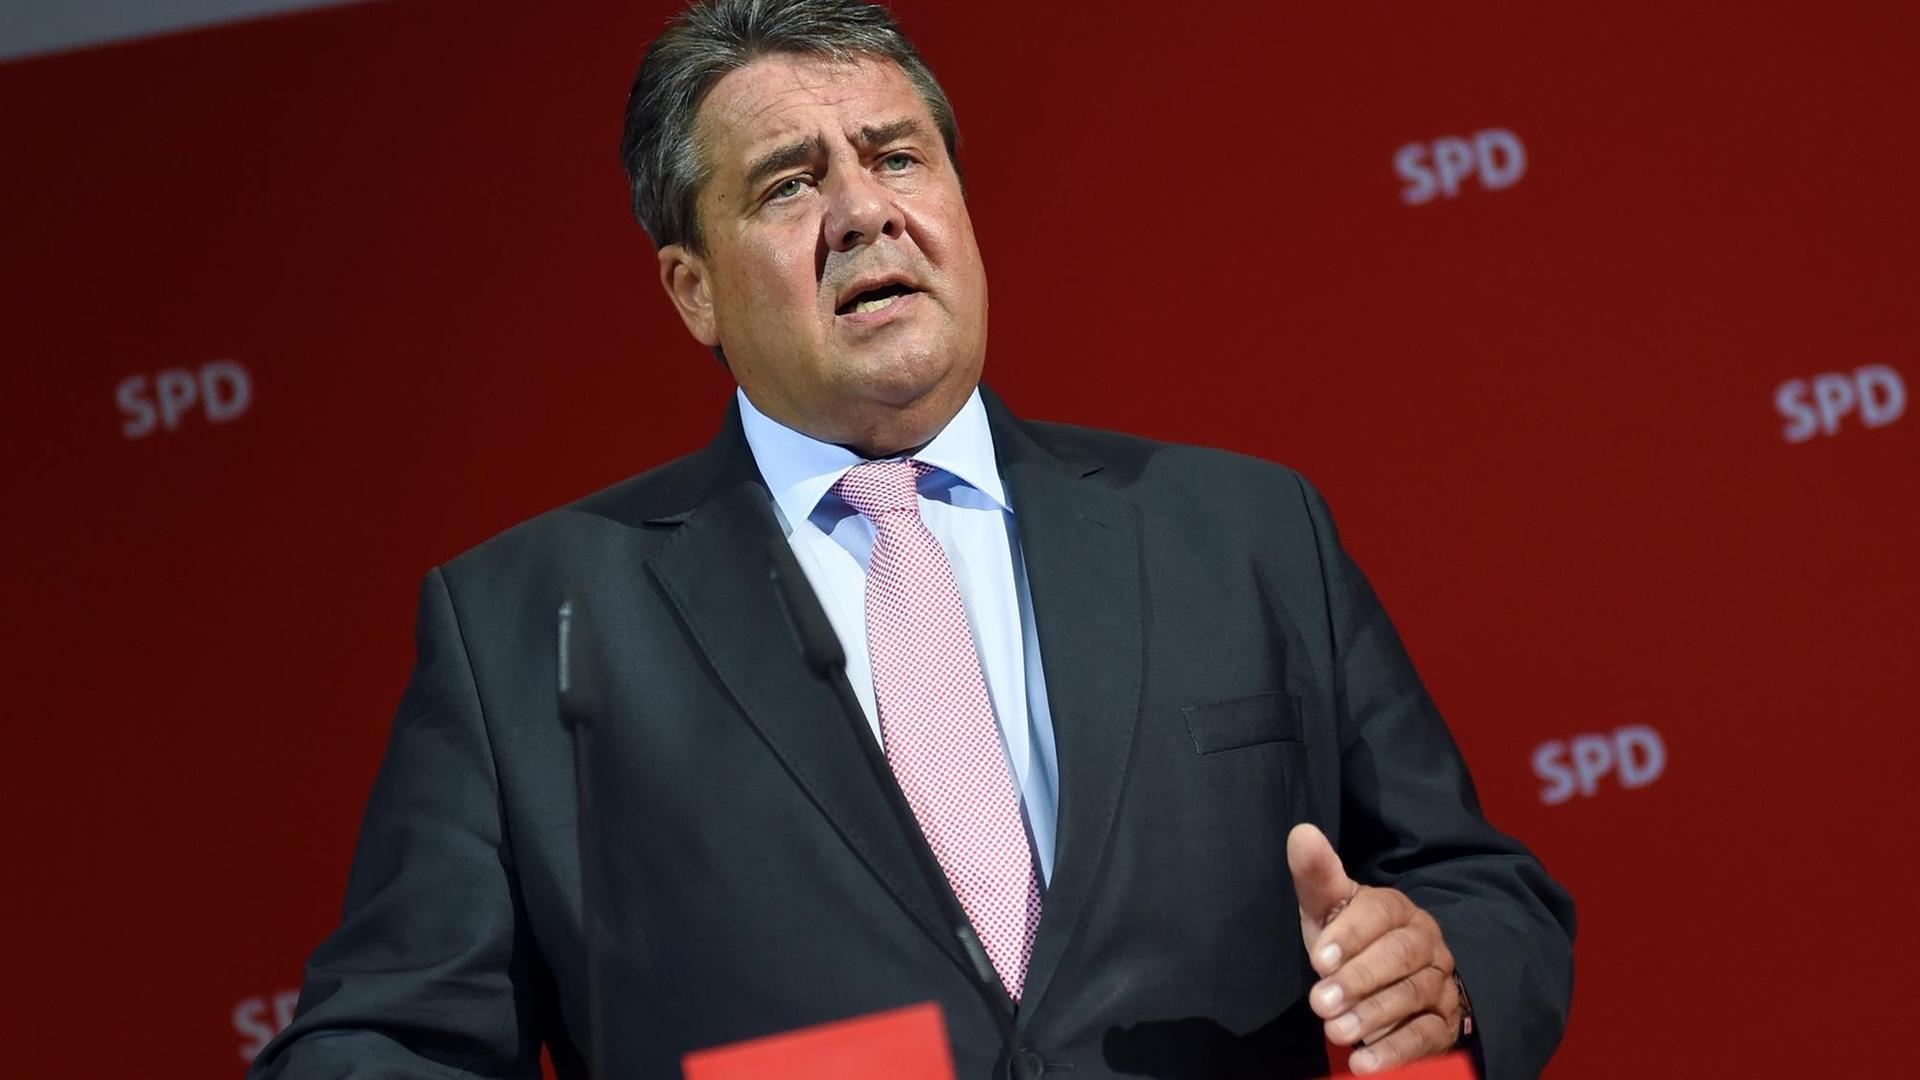 Der SPD-Parteivorsitzende Sigmar Gabriel spricht im Willy-Brandt-Haus in Berlin.